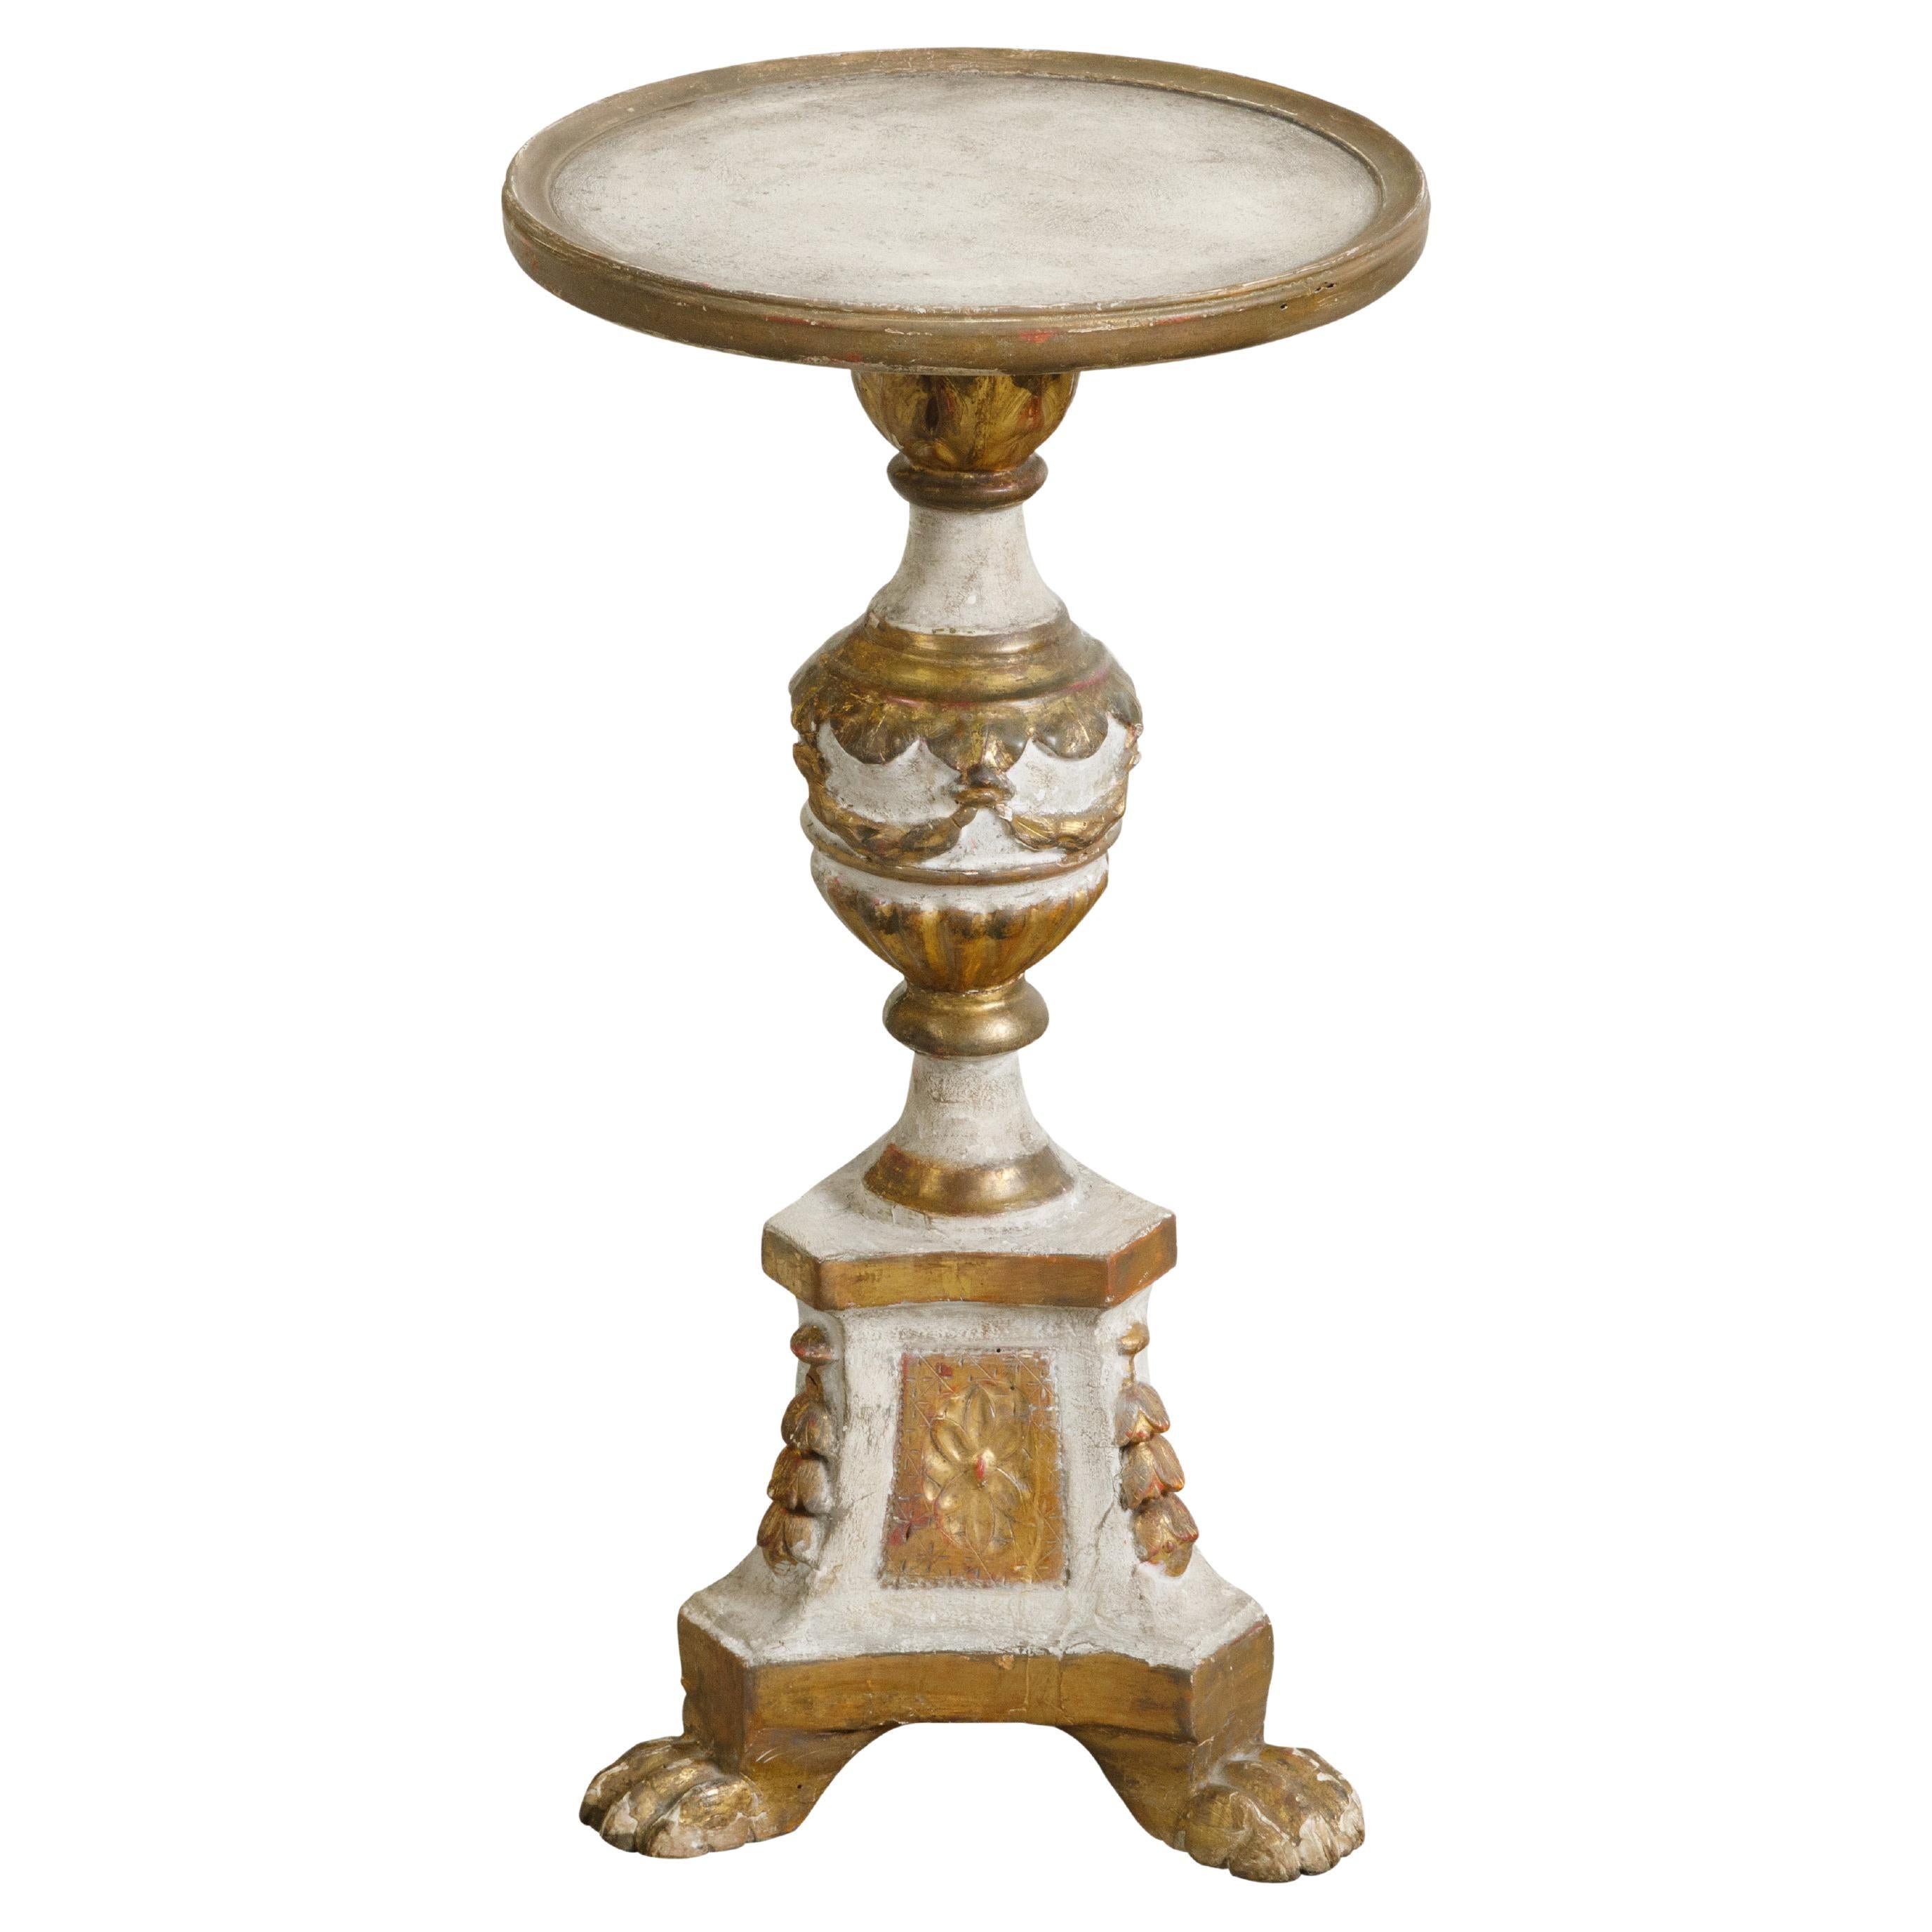 Bemalter und teilweise vergoldeter Guridon-Tisch aus der Restauration der 1820er Jahre